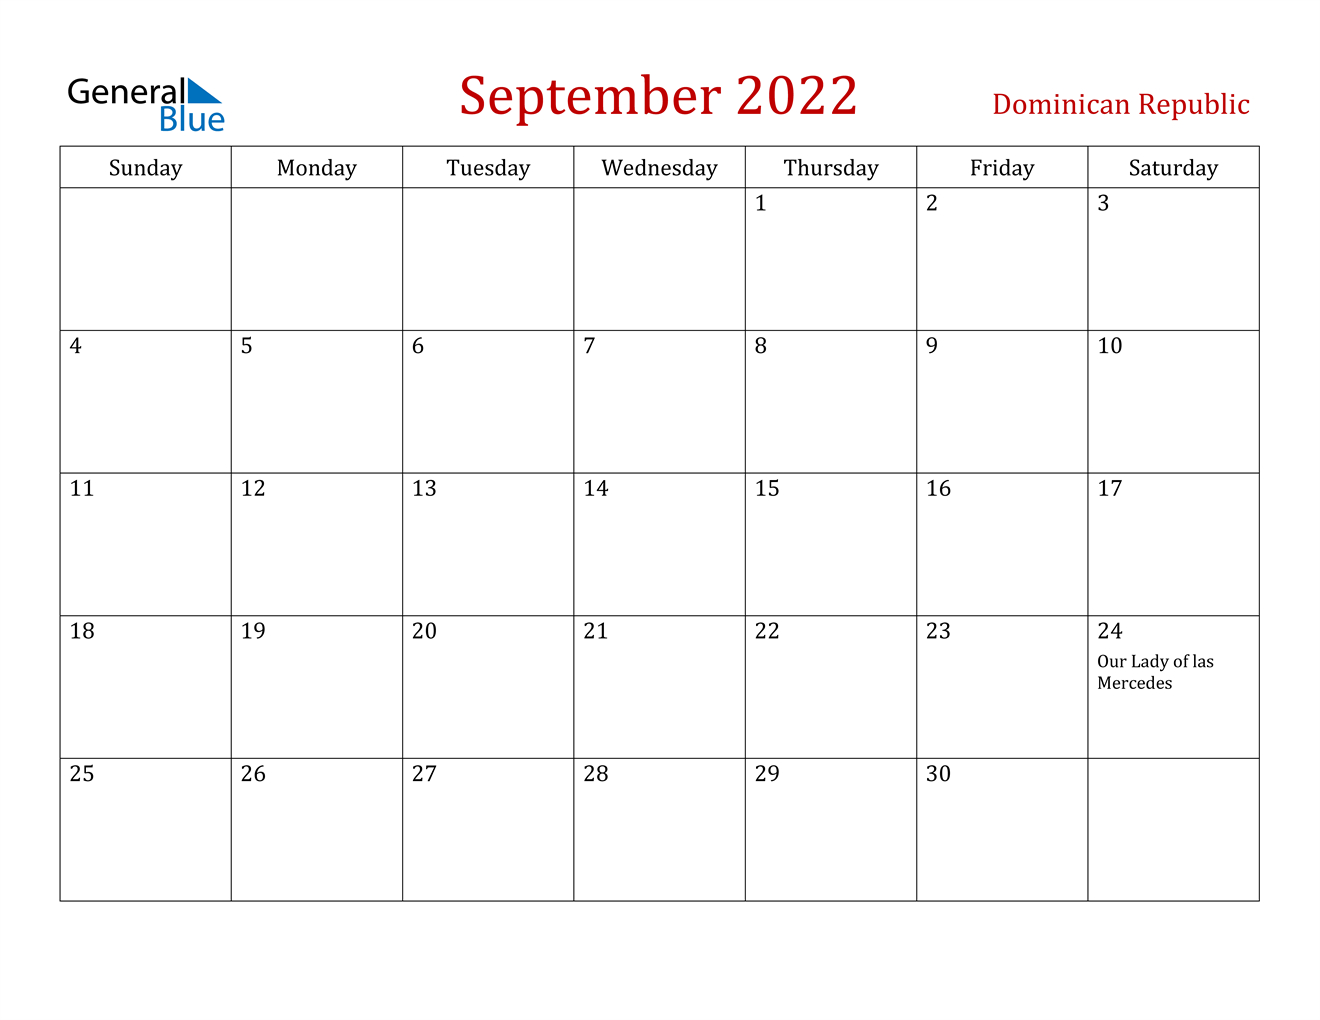 September 2022 Calendar - Dominican Republic